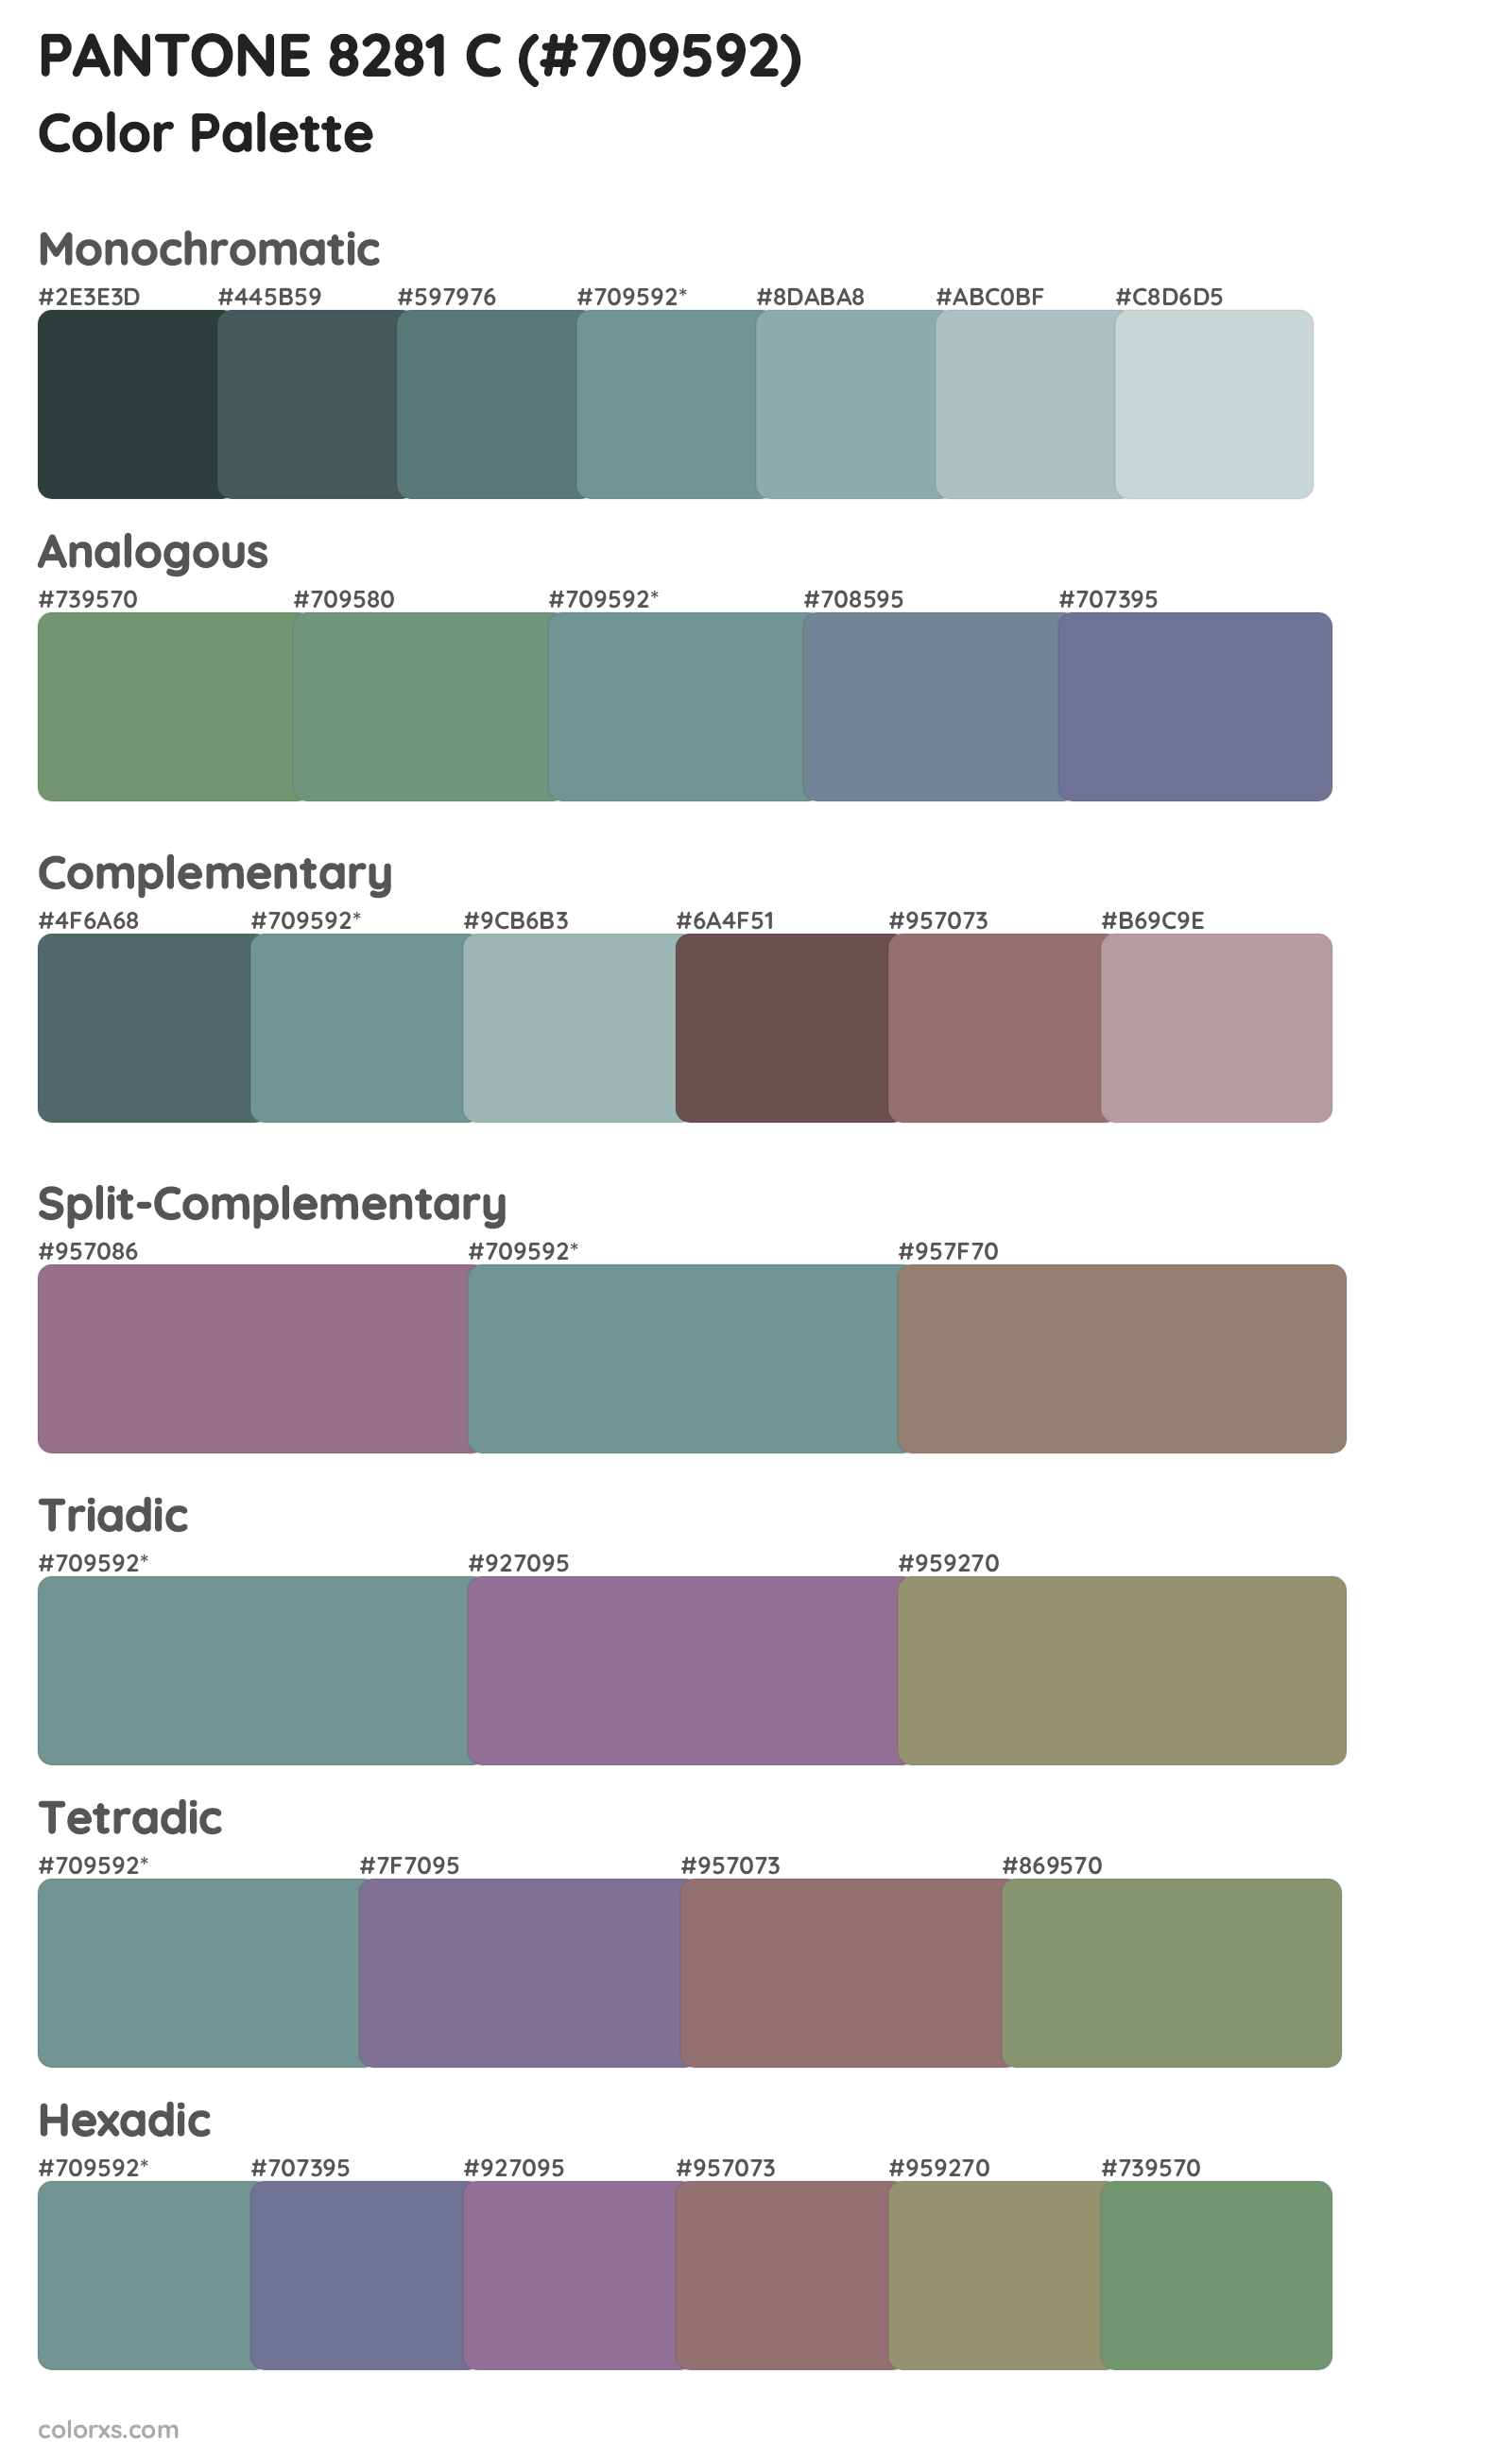 PANTONE 8281 C Color Scheme Palettes